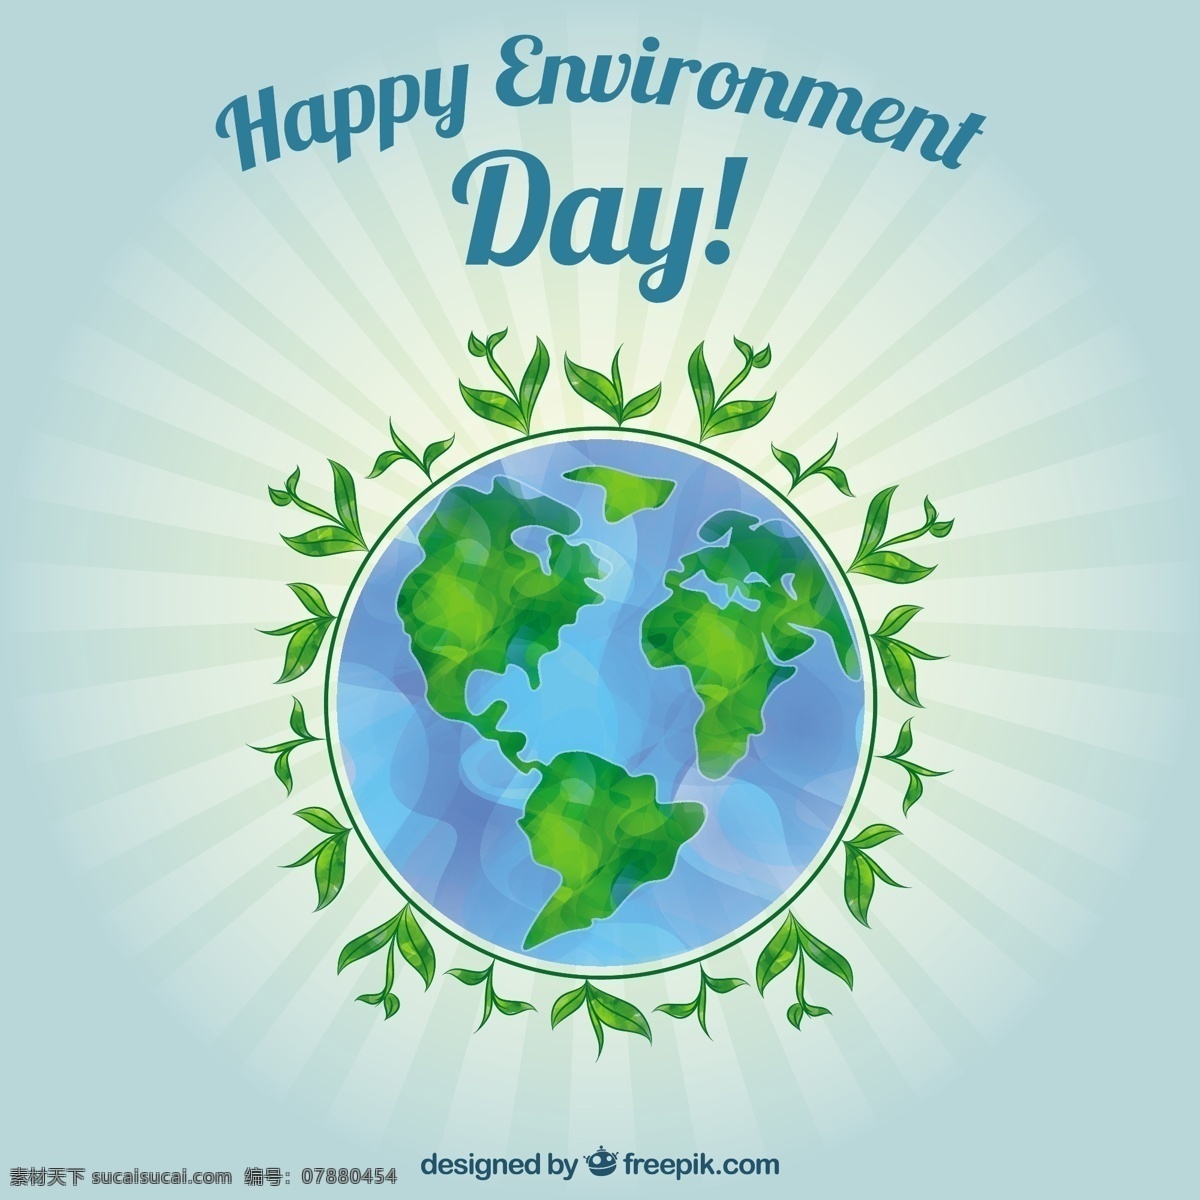 水彩 世界 植物 背景 水彩画 绿色 地球 生态 能源 回收 有机 自然 环境 发展 世界地球 地面 青色 天蓝色